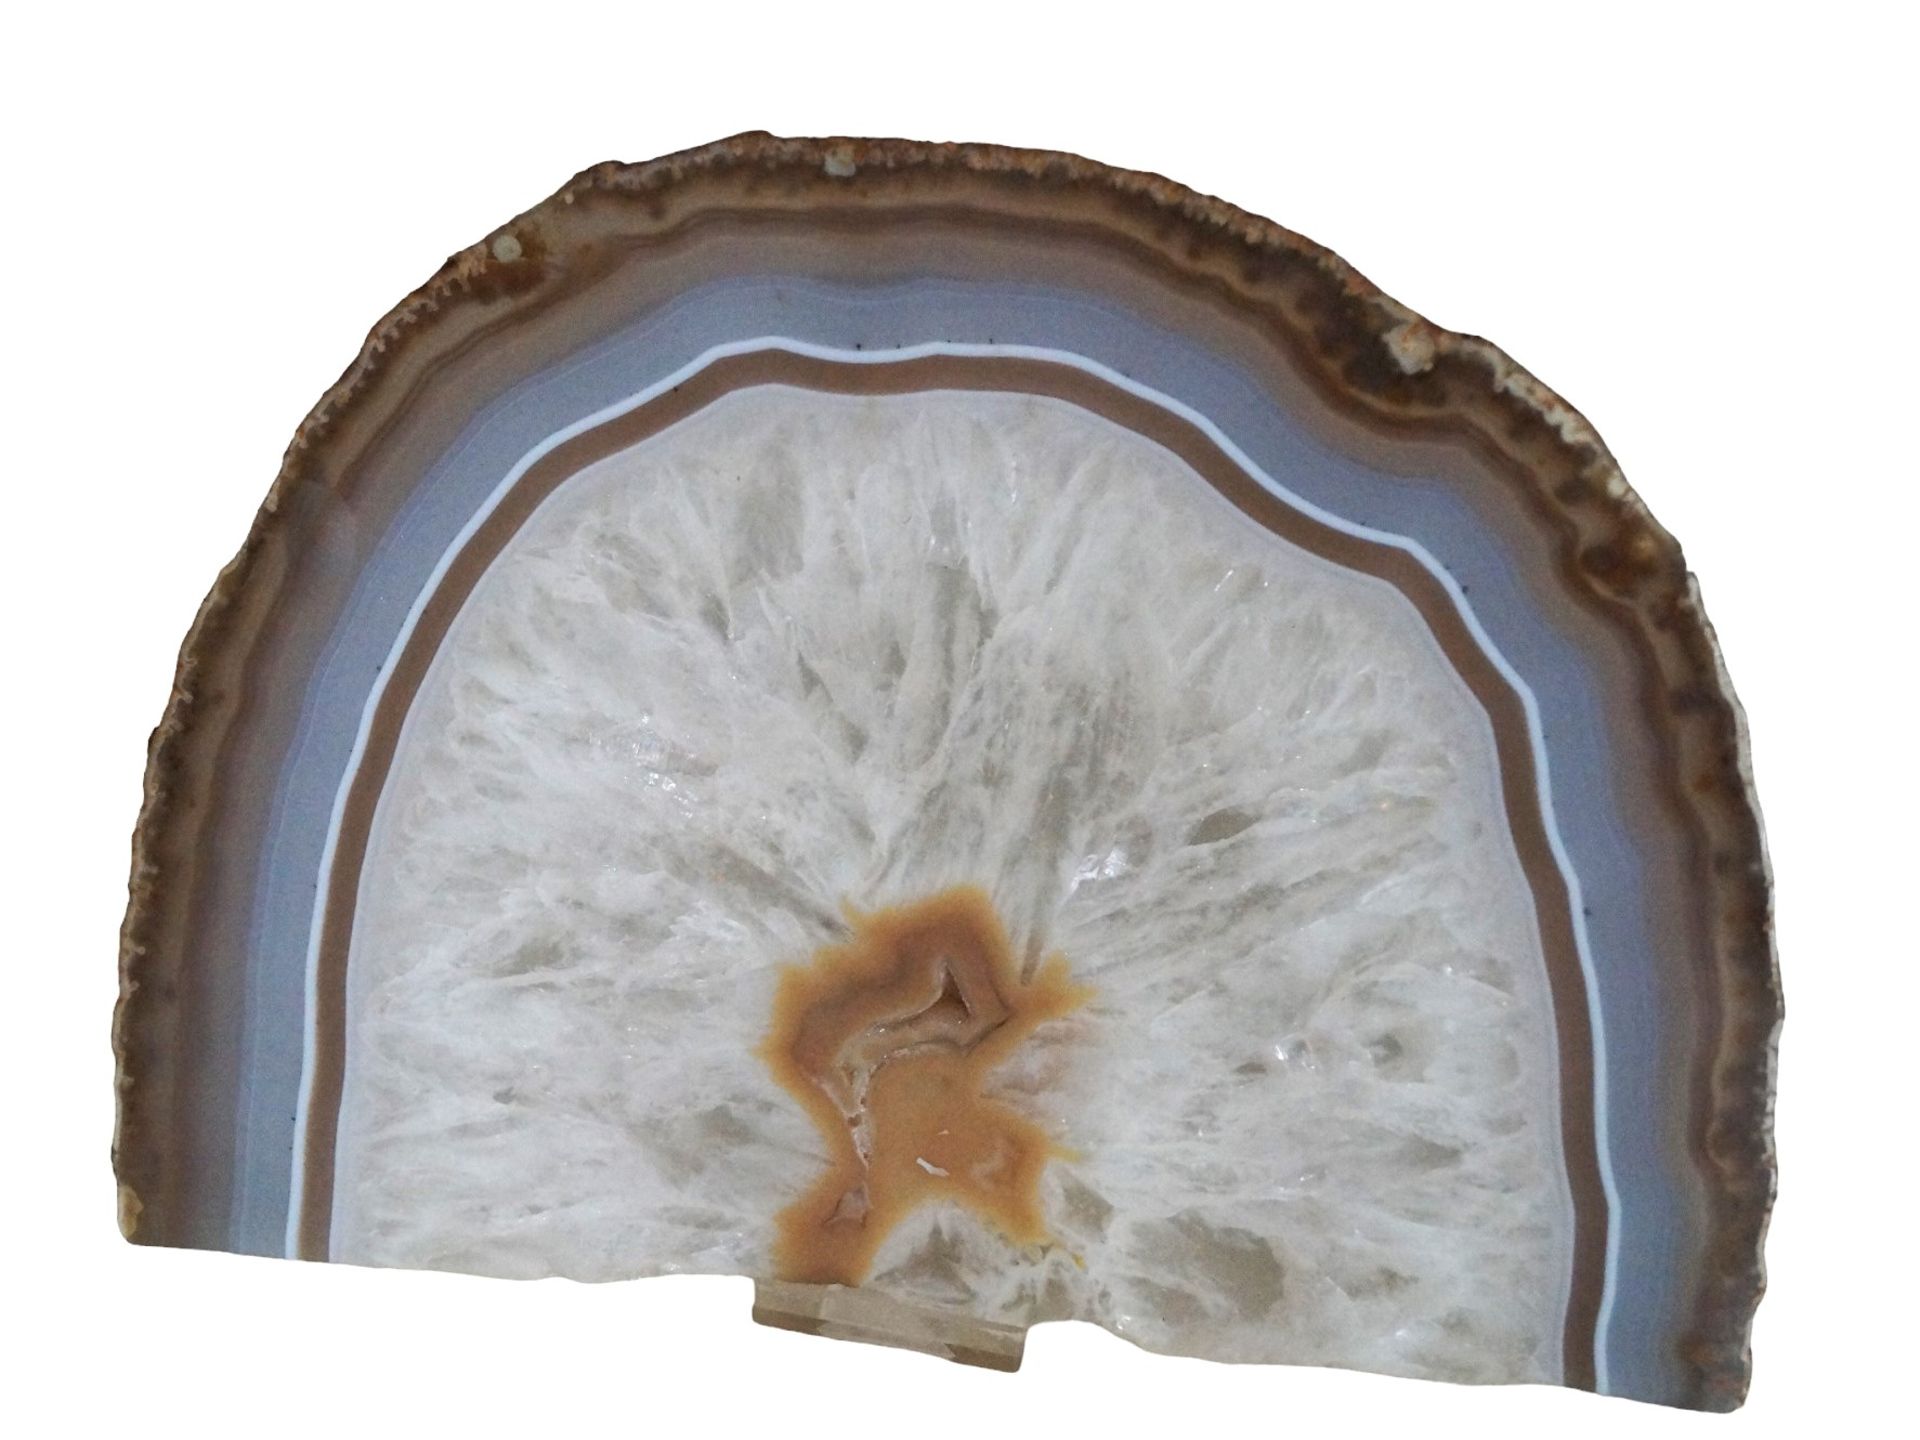 Größer Achat-Steinscheibe; hälftige, polierte Scheibe mit schönem Farbbild; Maße ca.: B: 20cm, T: 4